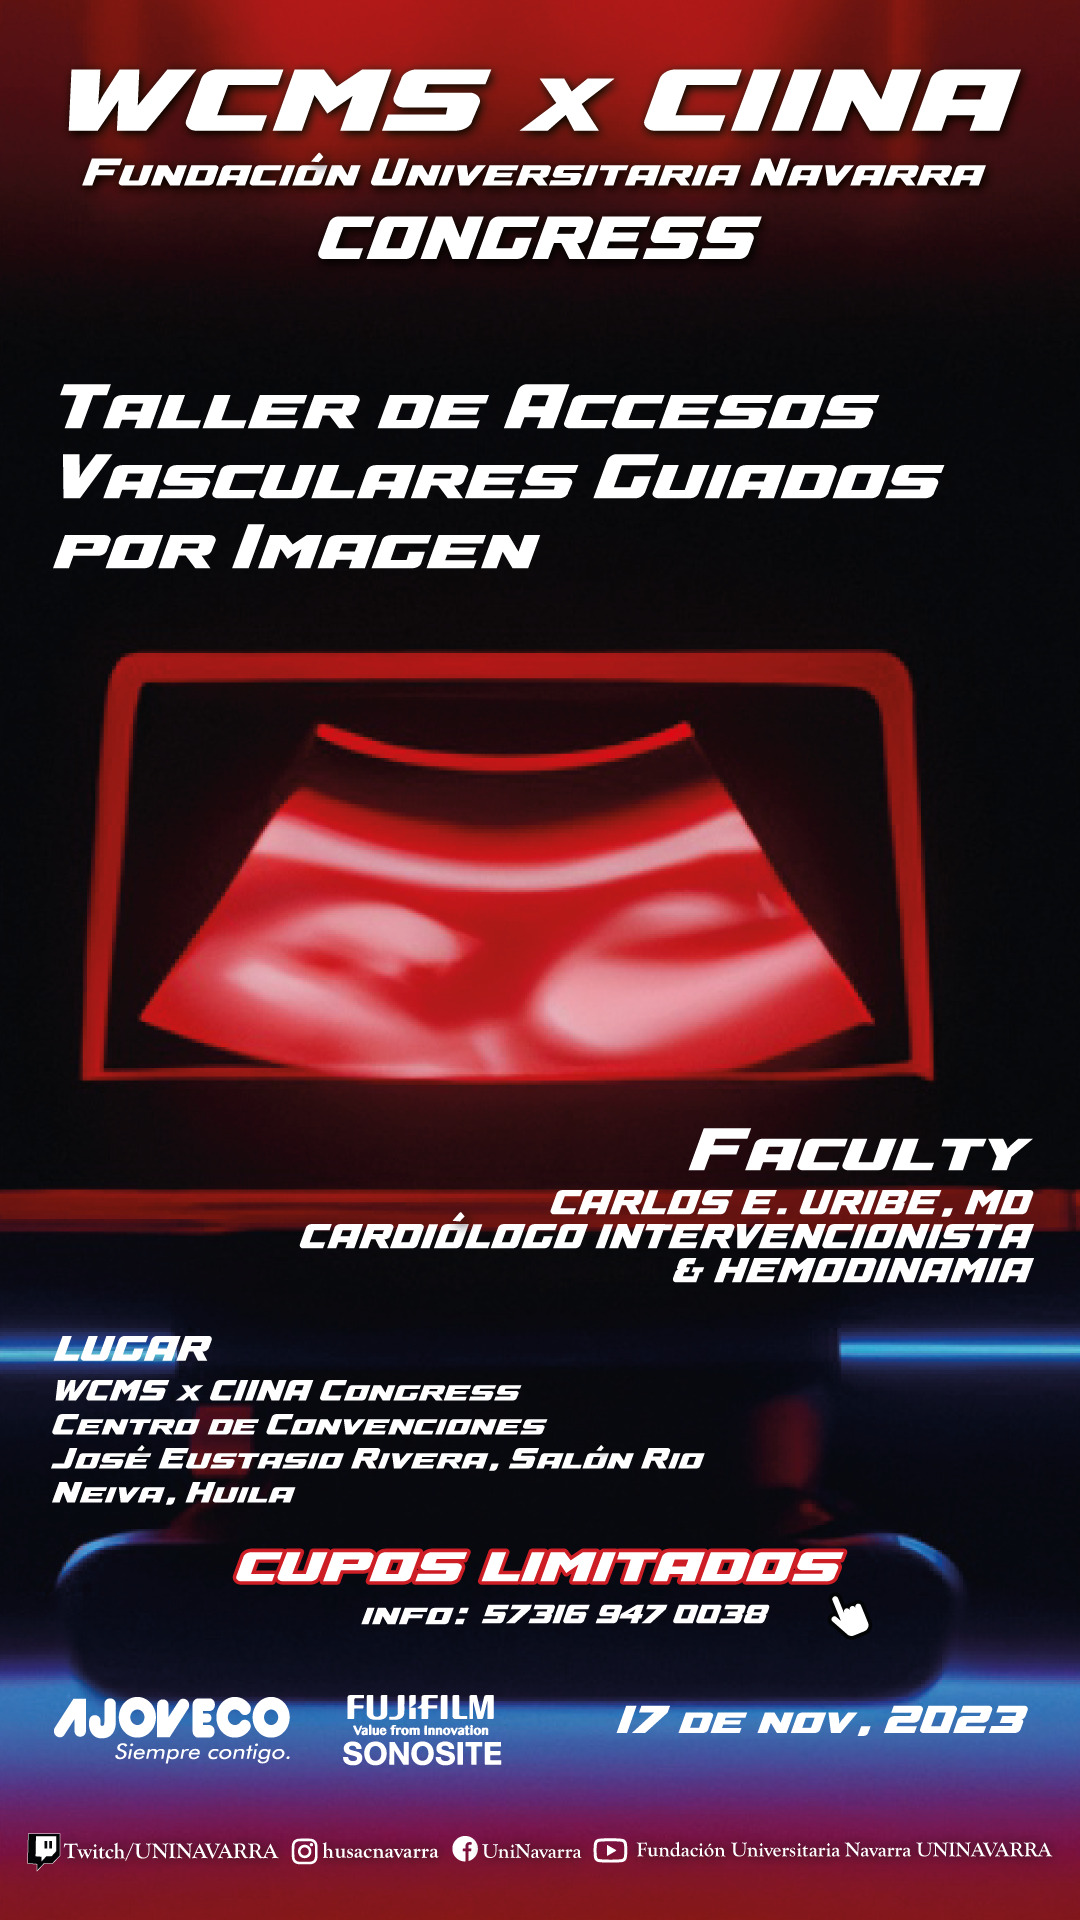 taller-de-accesos-vasculares (1) (1)